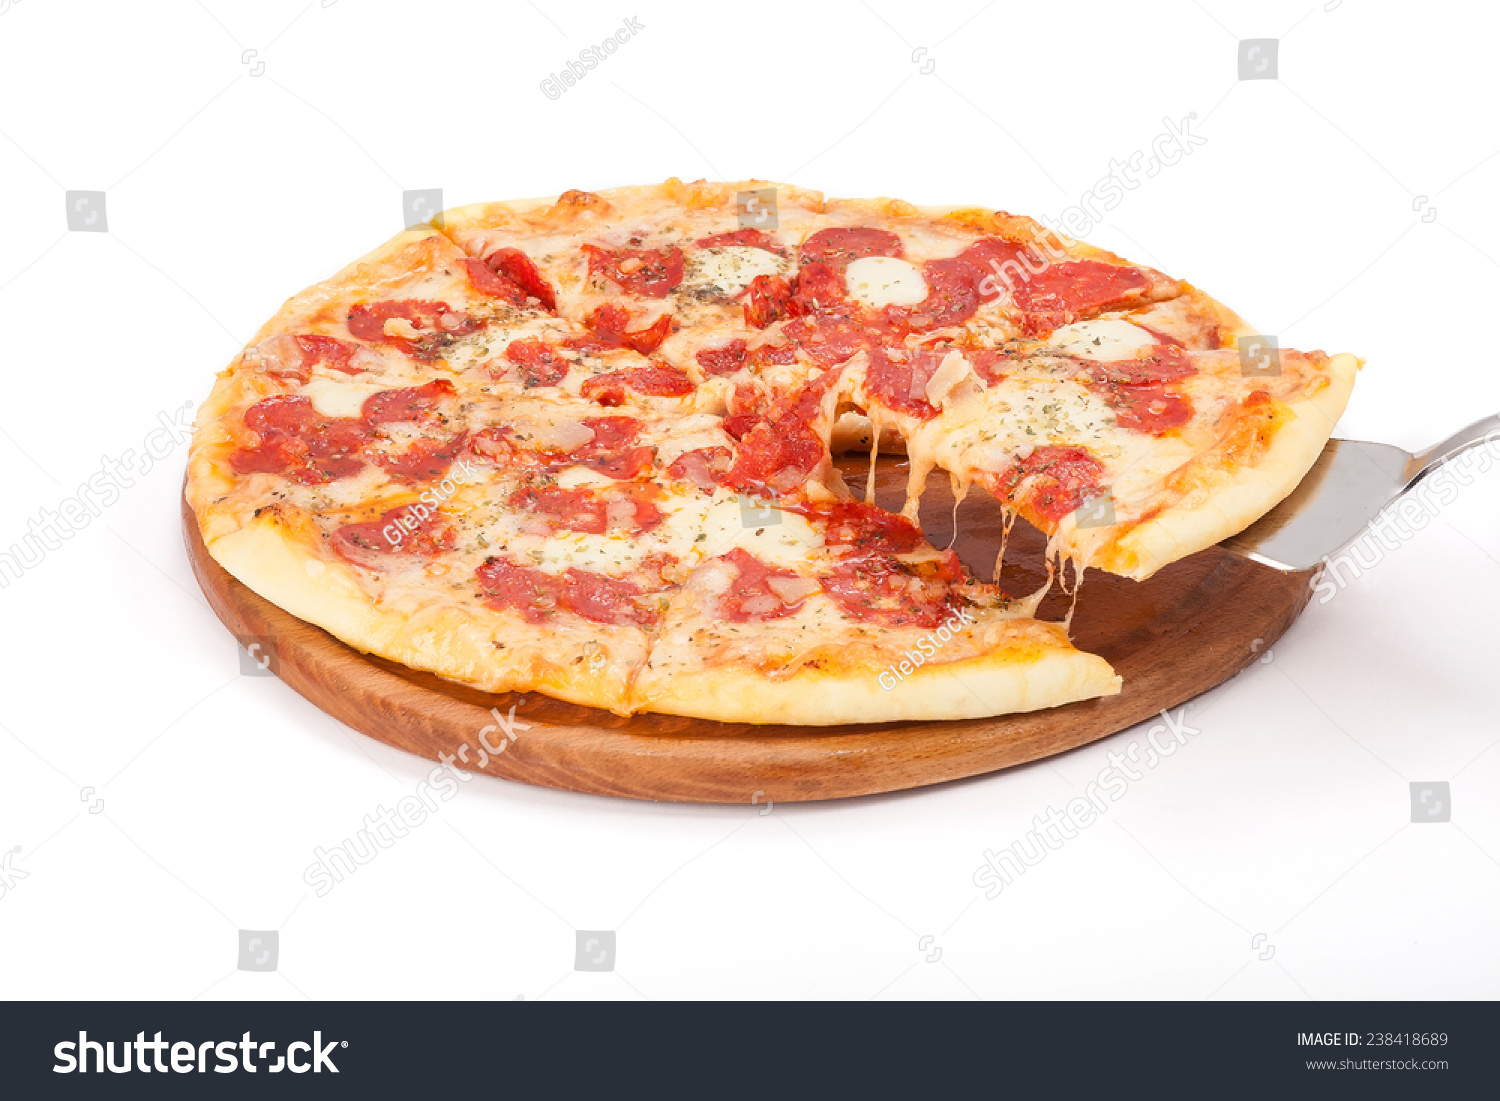 пицца с колбасой рецепт приготовления в домашних условиях фото 81